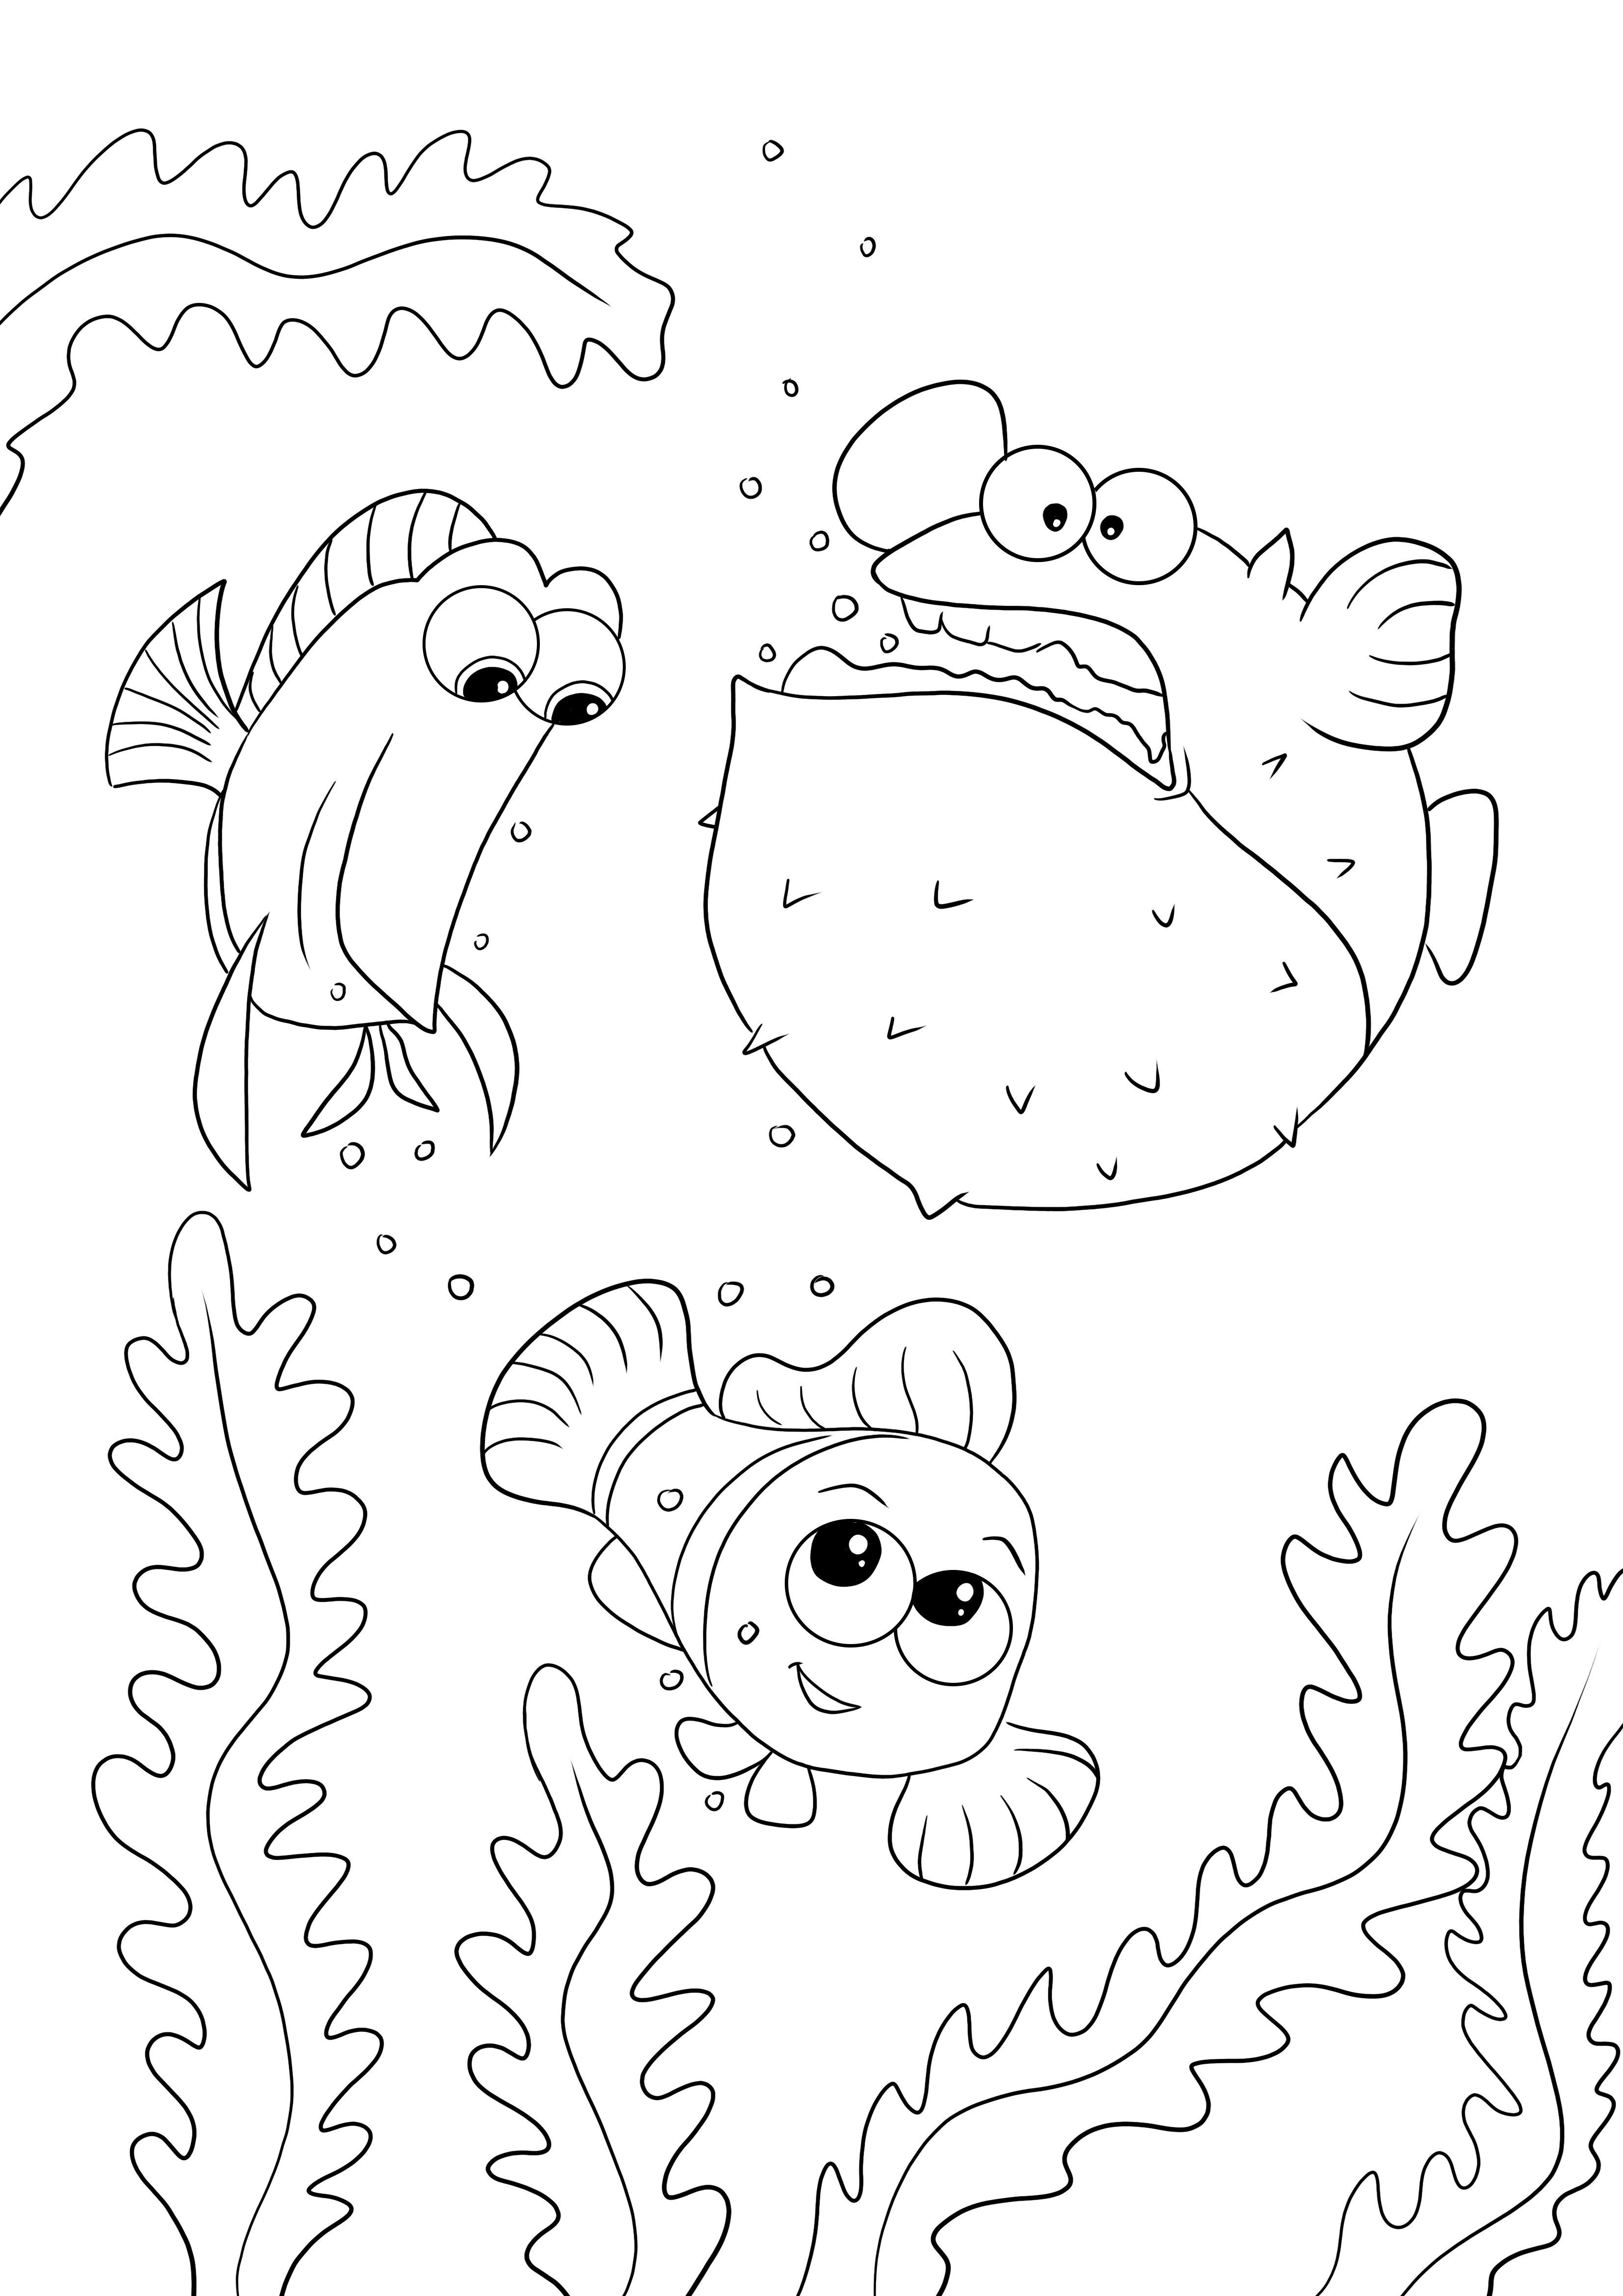 Bezpłatne kolorowanie obrazu Tang Gang-Dory-Nemo dla dzieci w każdym wieku